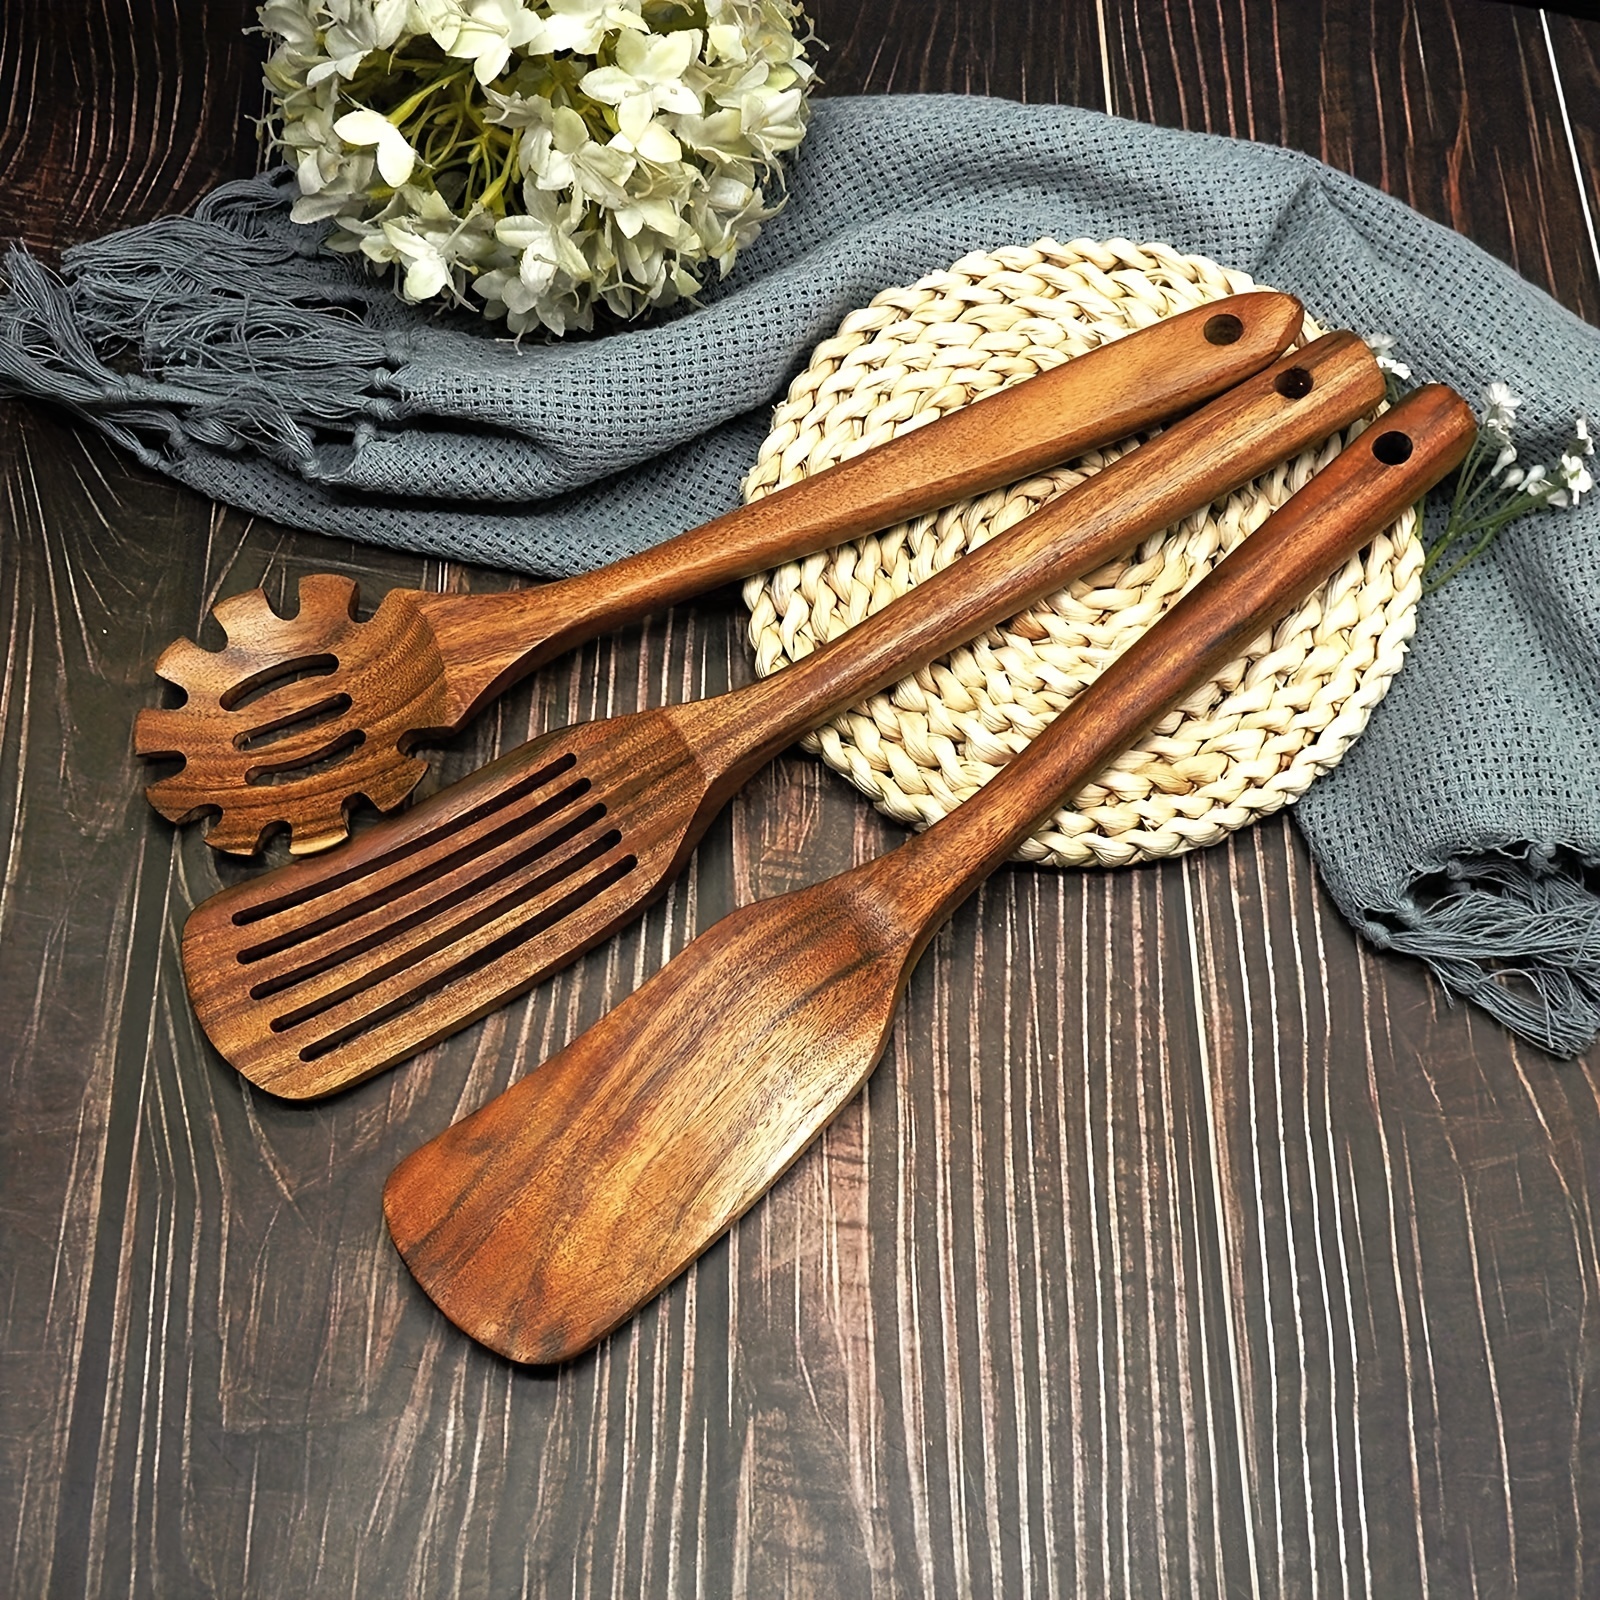 Cucharas de madera para cocinar, juego de 7 utensilios de cocina de madera  antiadherentes, utensilios de cocina naturales y saludables (7 piezas)